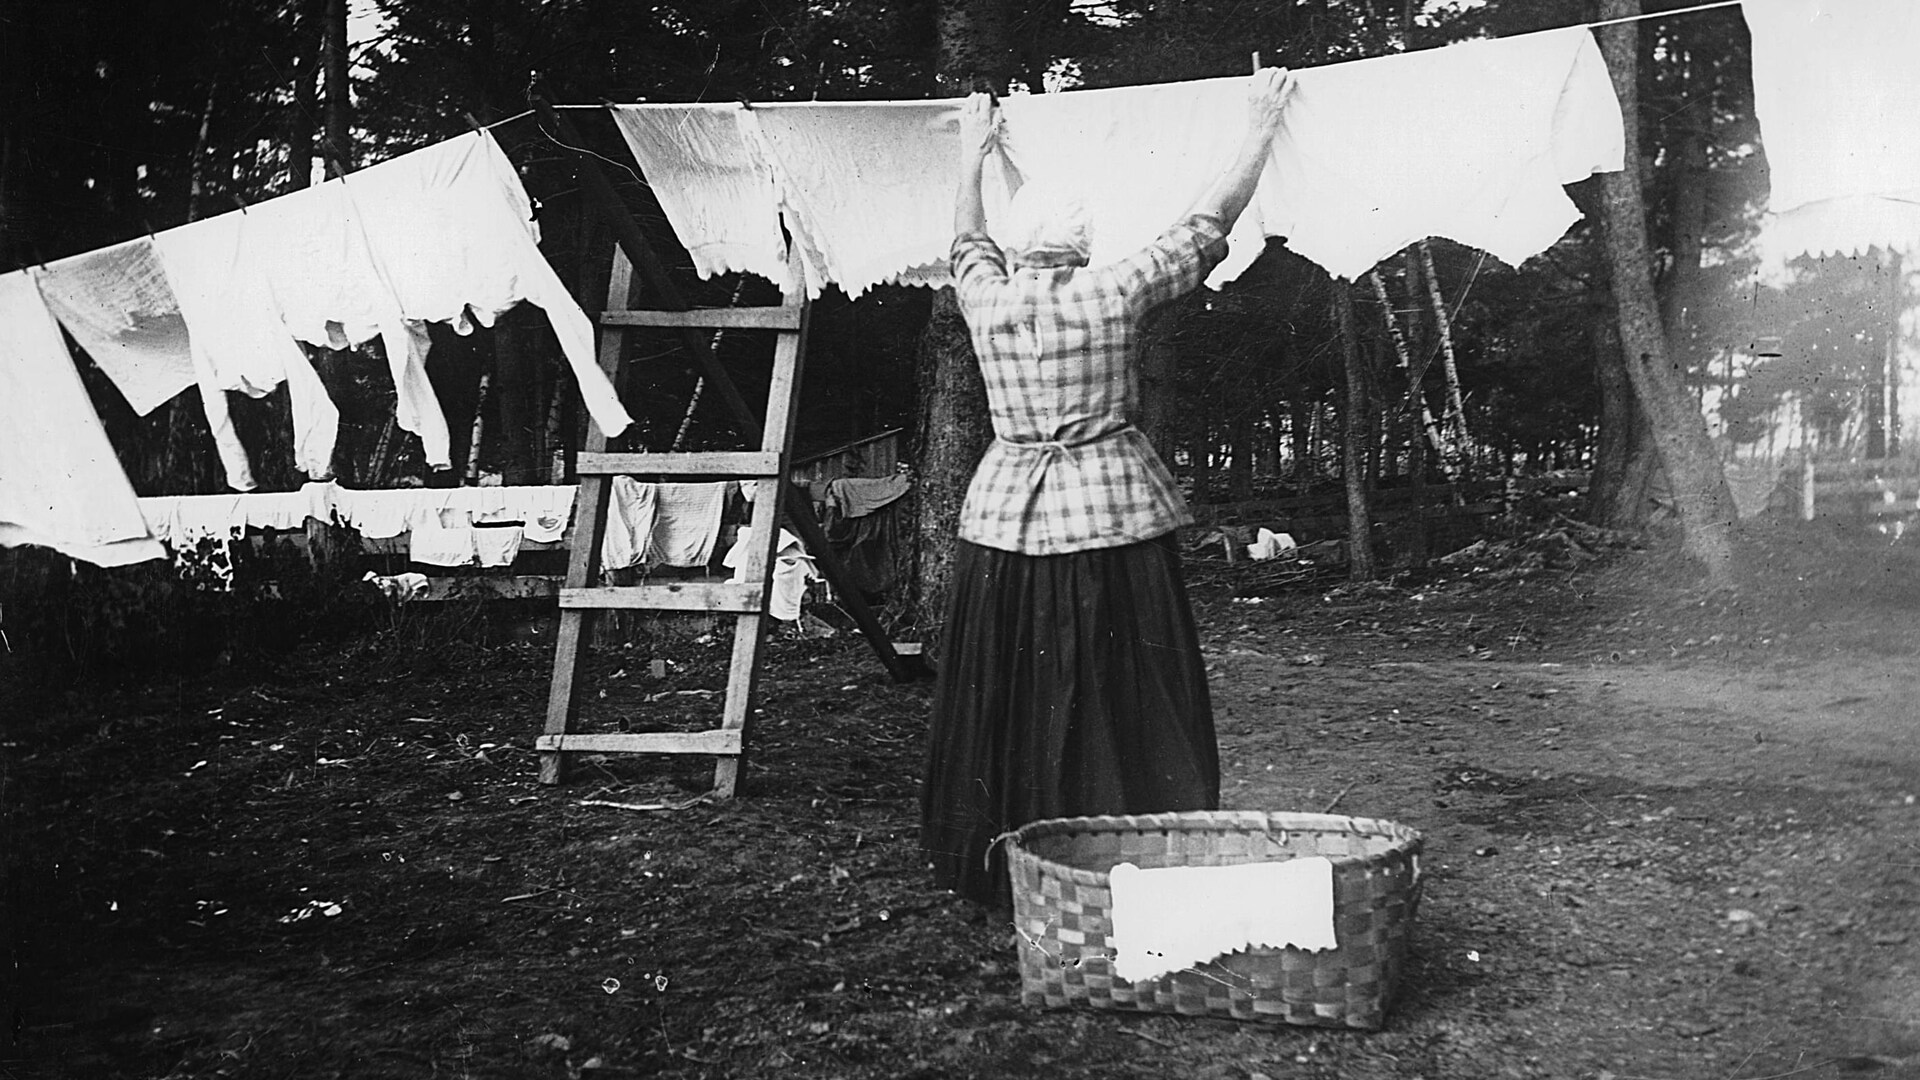 Une femme de dos est occupée à suspendre le linge de toute la famille sur une corde à linge, au milieu d'arbres, sur une photographie du début du siècle en noir et blanc. La lessive est immaculée. 